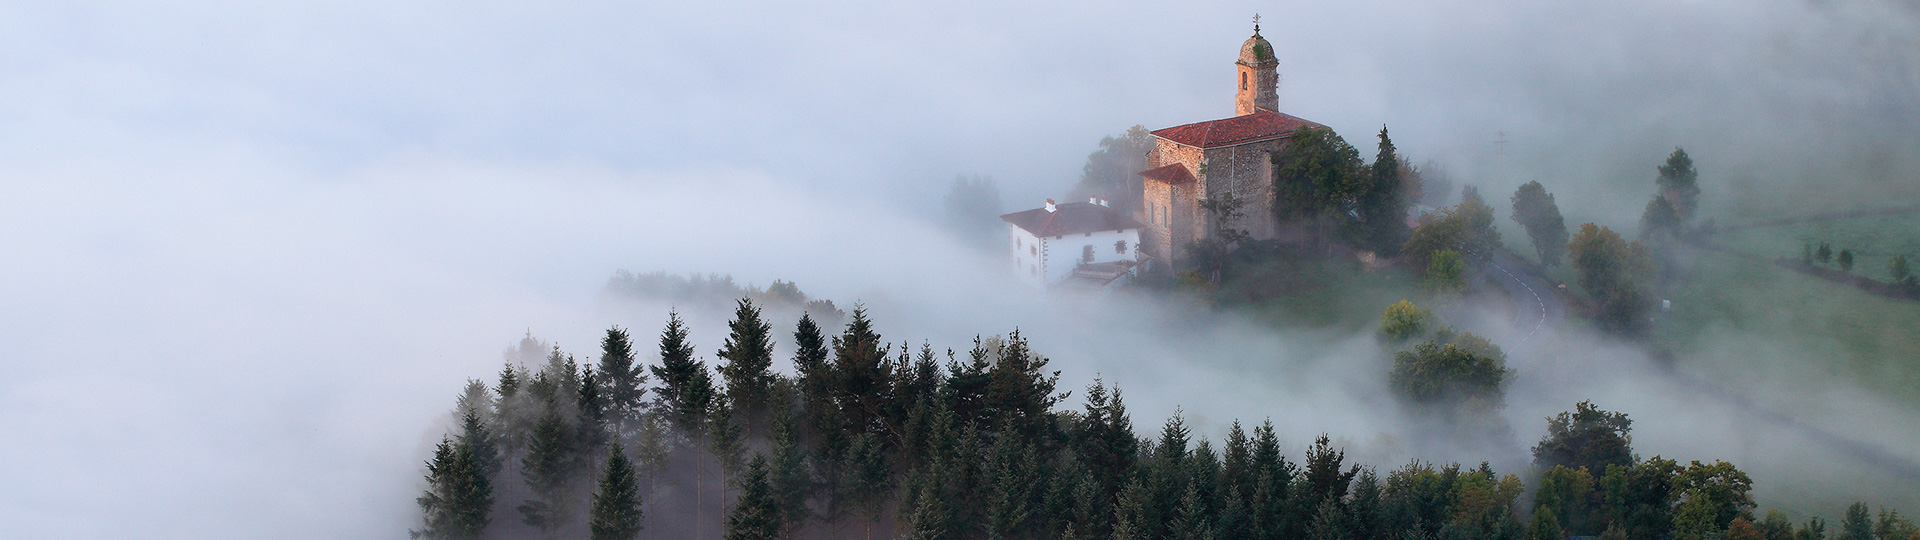 Névoa ao amanhecer no vale de Aramayona, País Basco